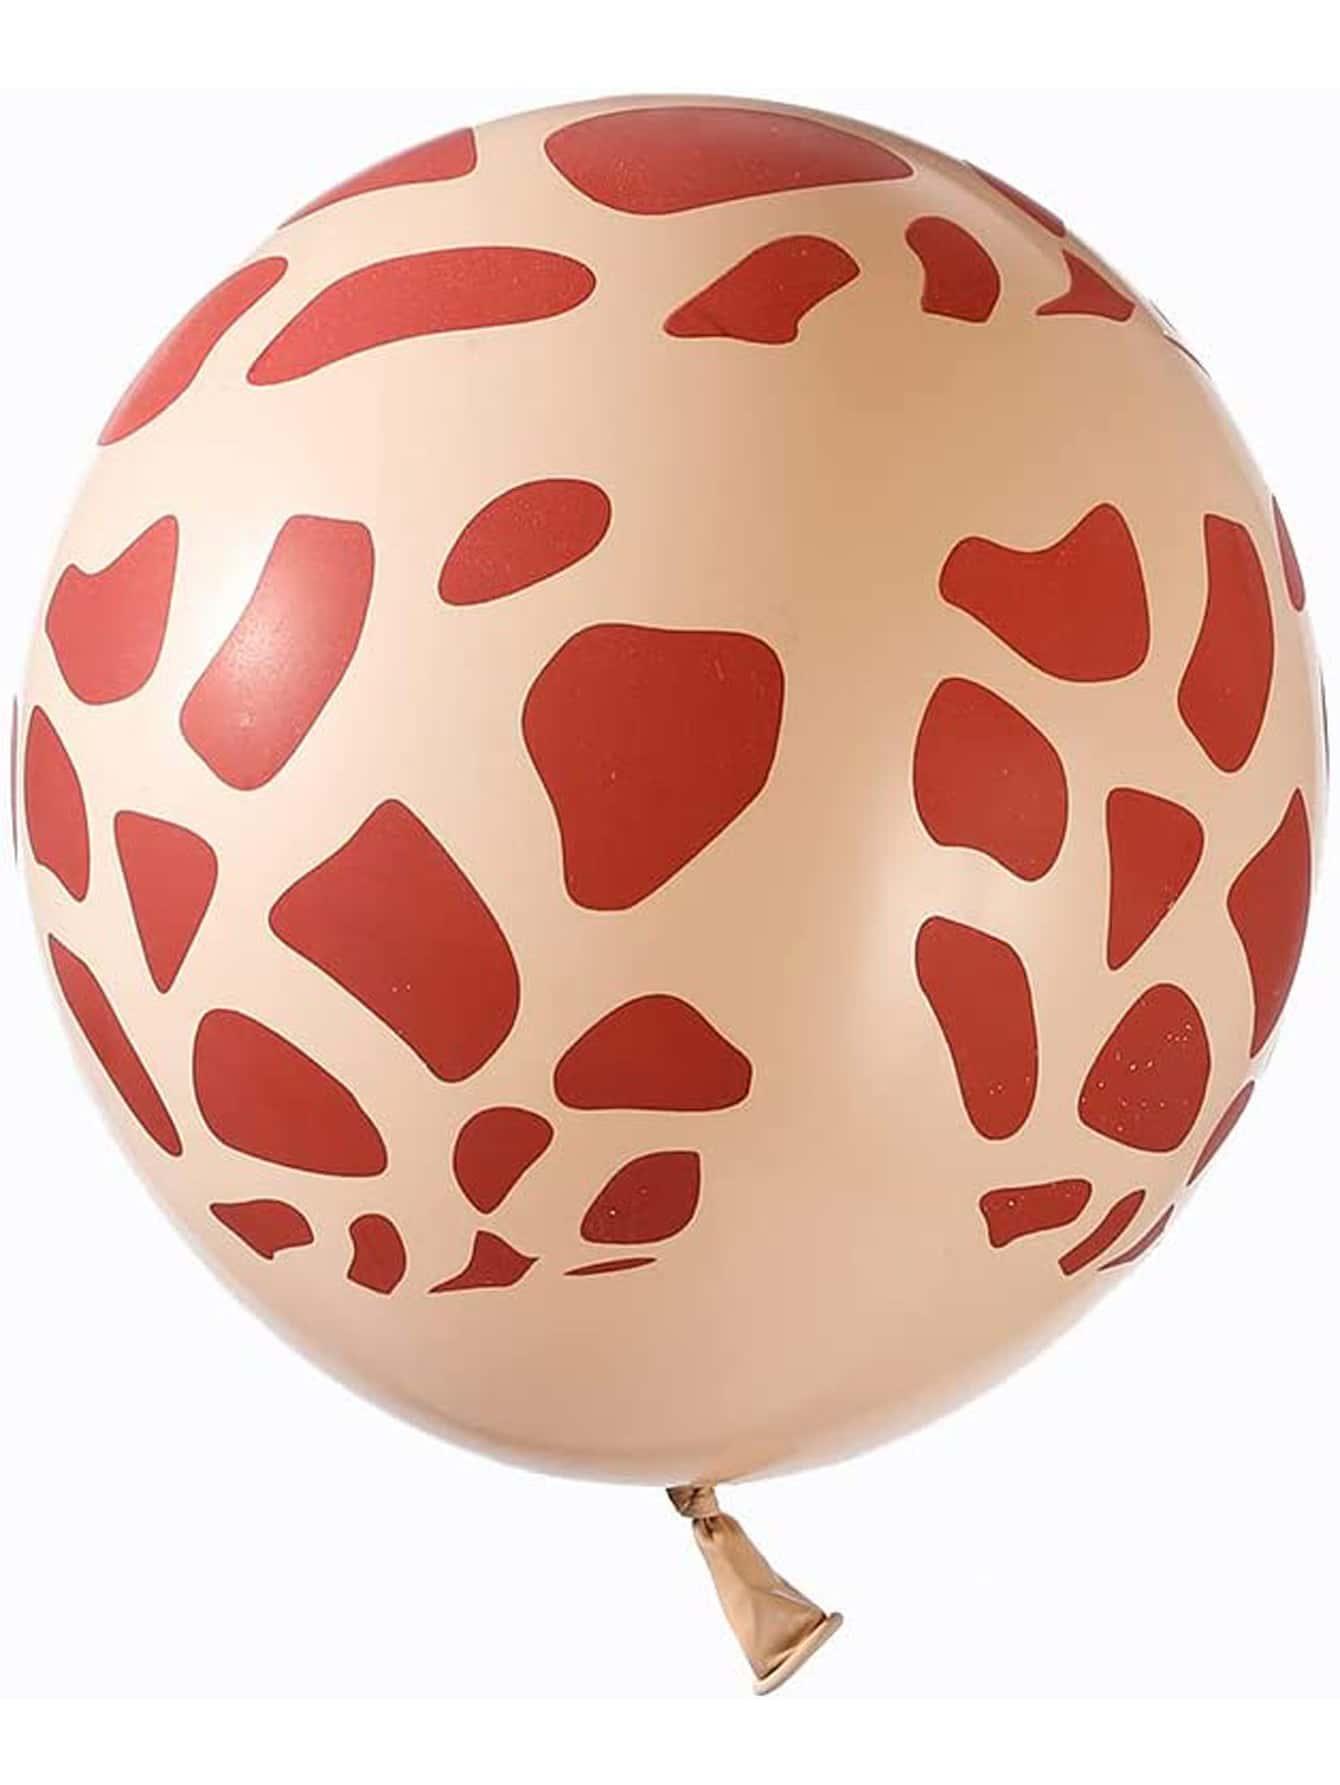 137pcs Decorative Balloon Arch Kit - Decotree.co Online Shop